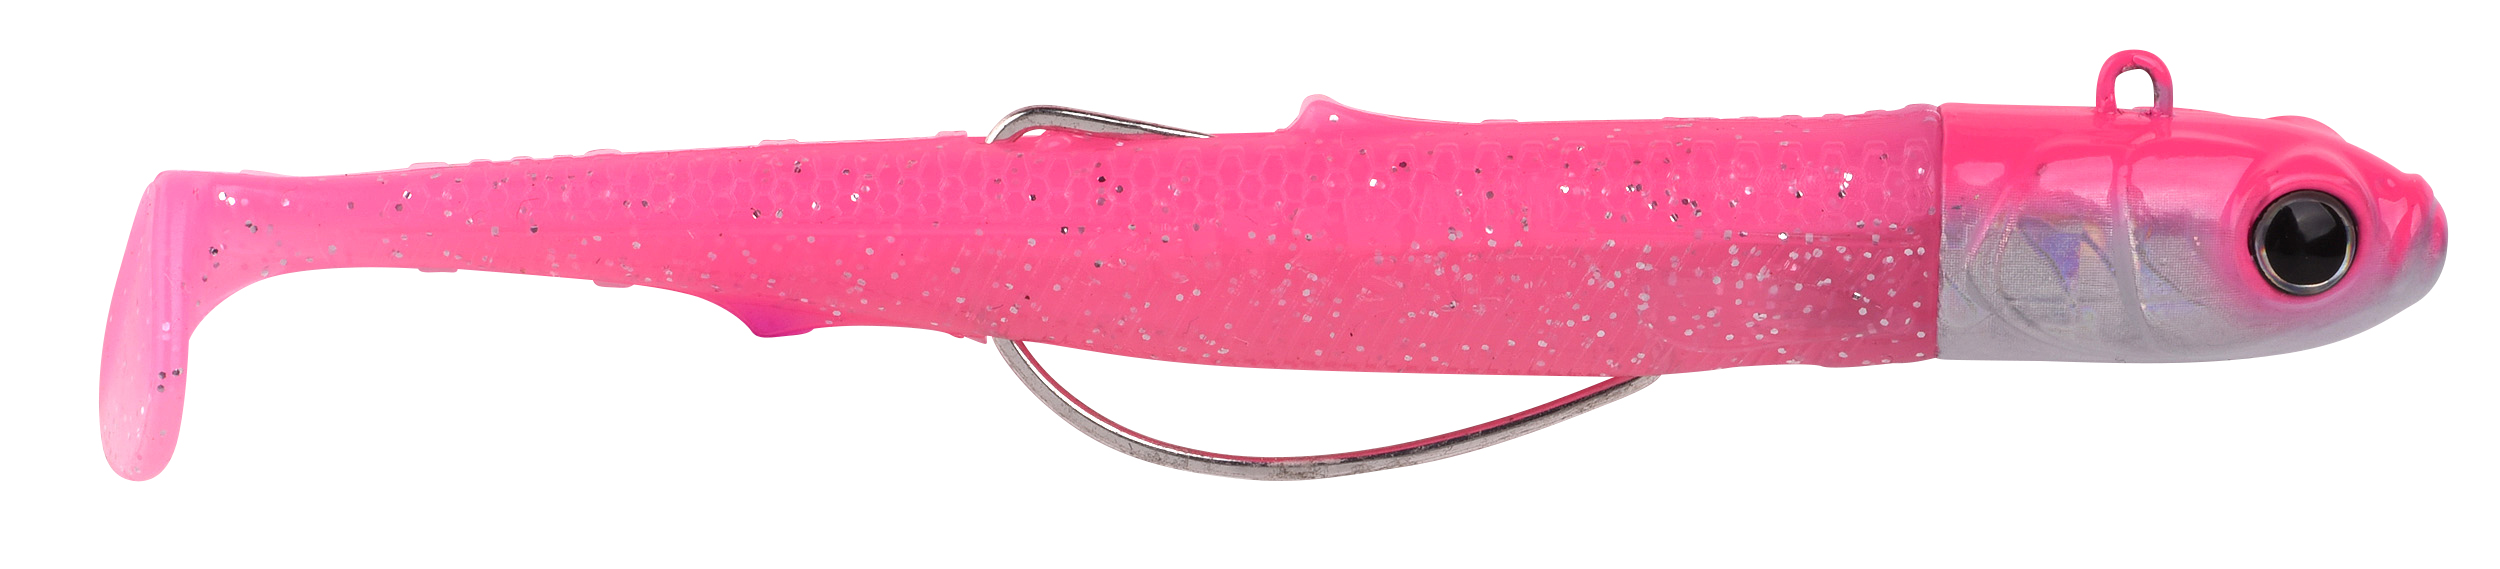 Spro Gutsbait Salt Sea Fish Softbait 8cm (7g) - Pink Minnow